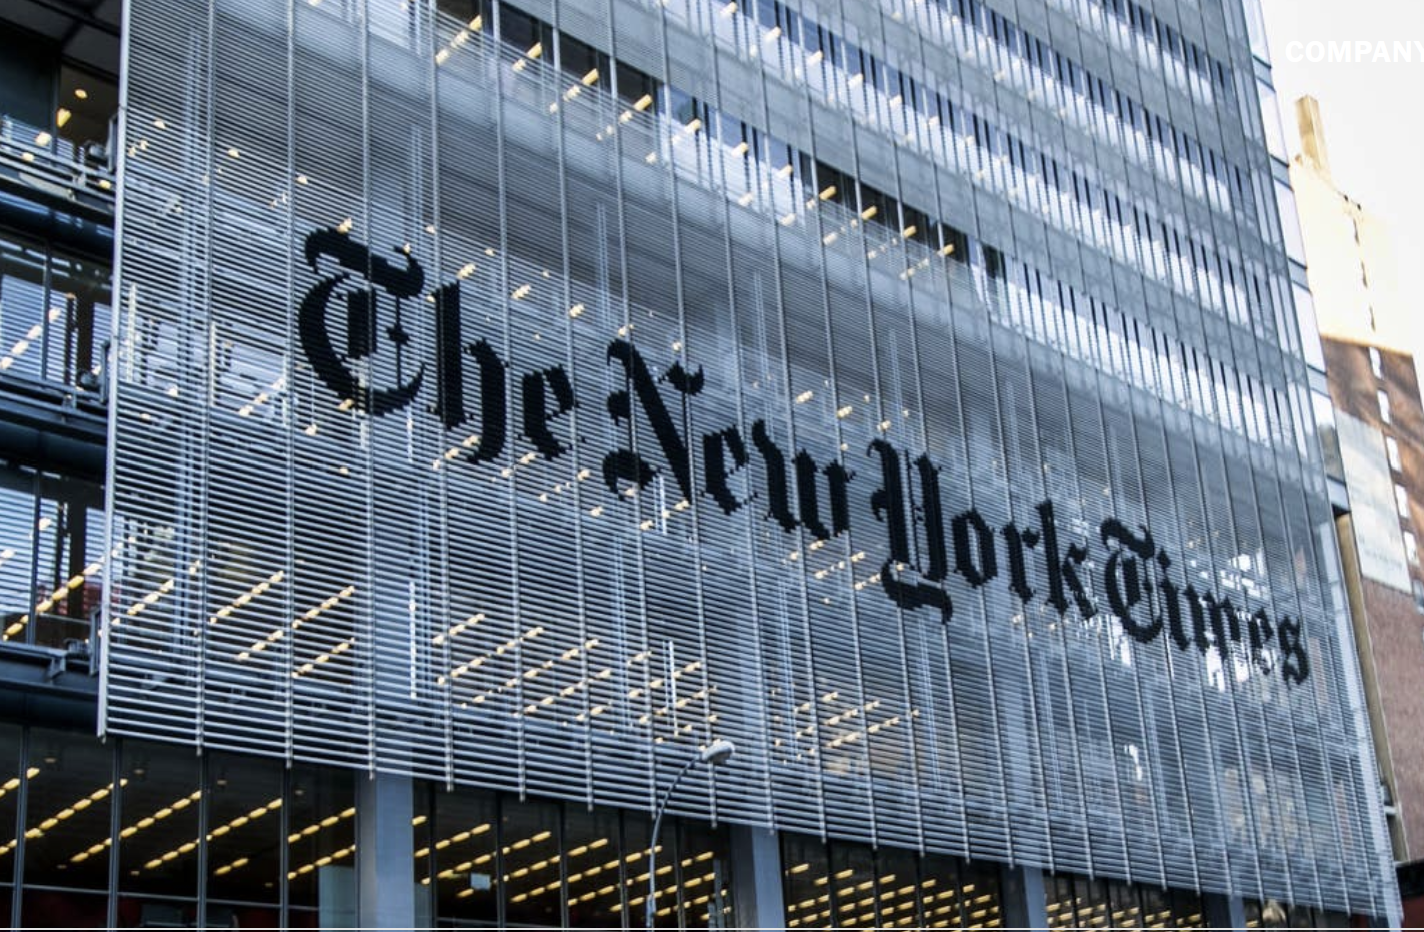 정보 번들 플랫폼으로의 전환에 성공한 뉴욕타임스, 1분기 1인당 구독 매출 증가(The New York Times' shift to an information bundling platform helped boost per capita subscription revenue in Q1)